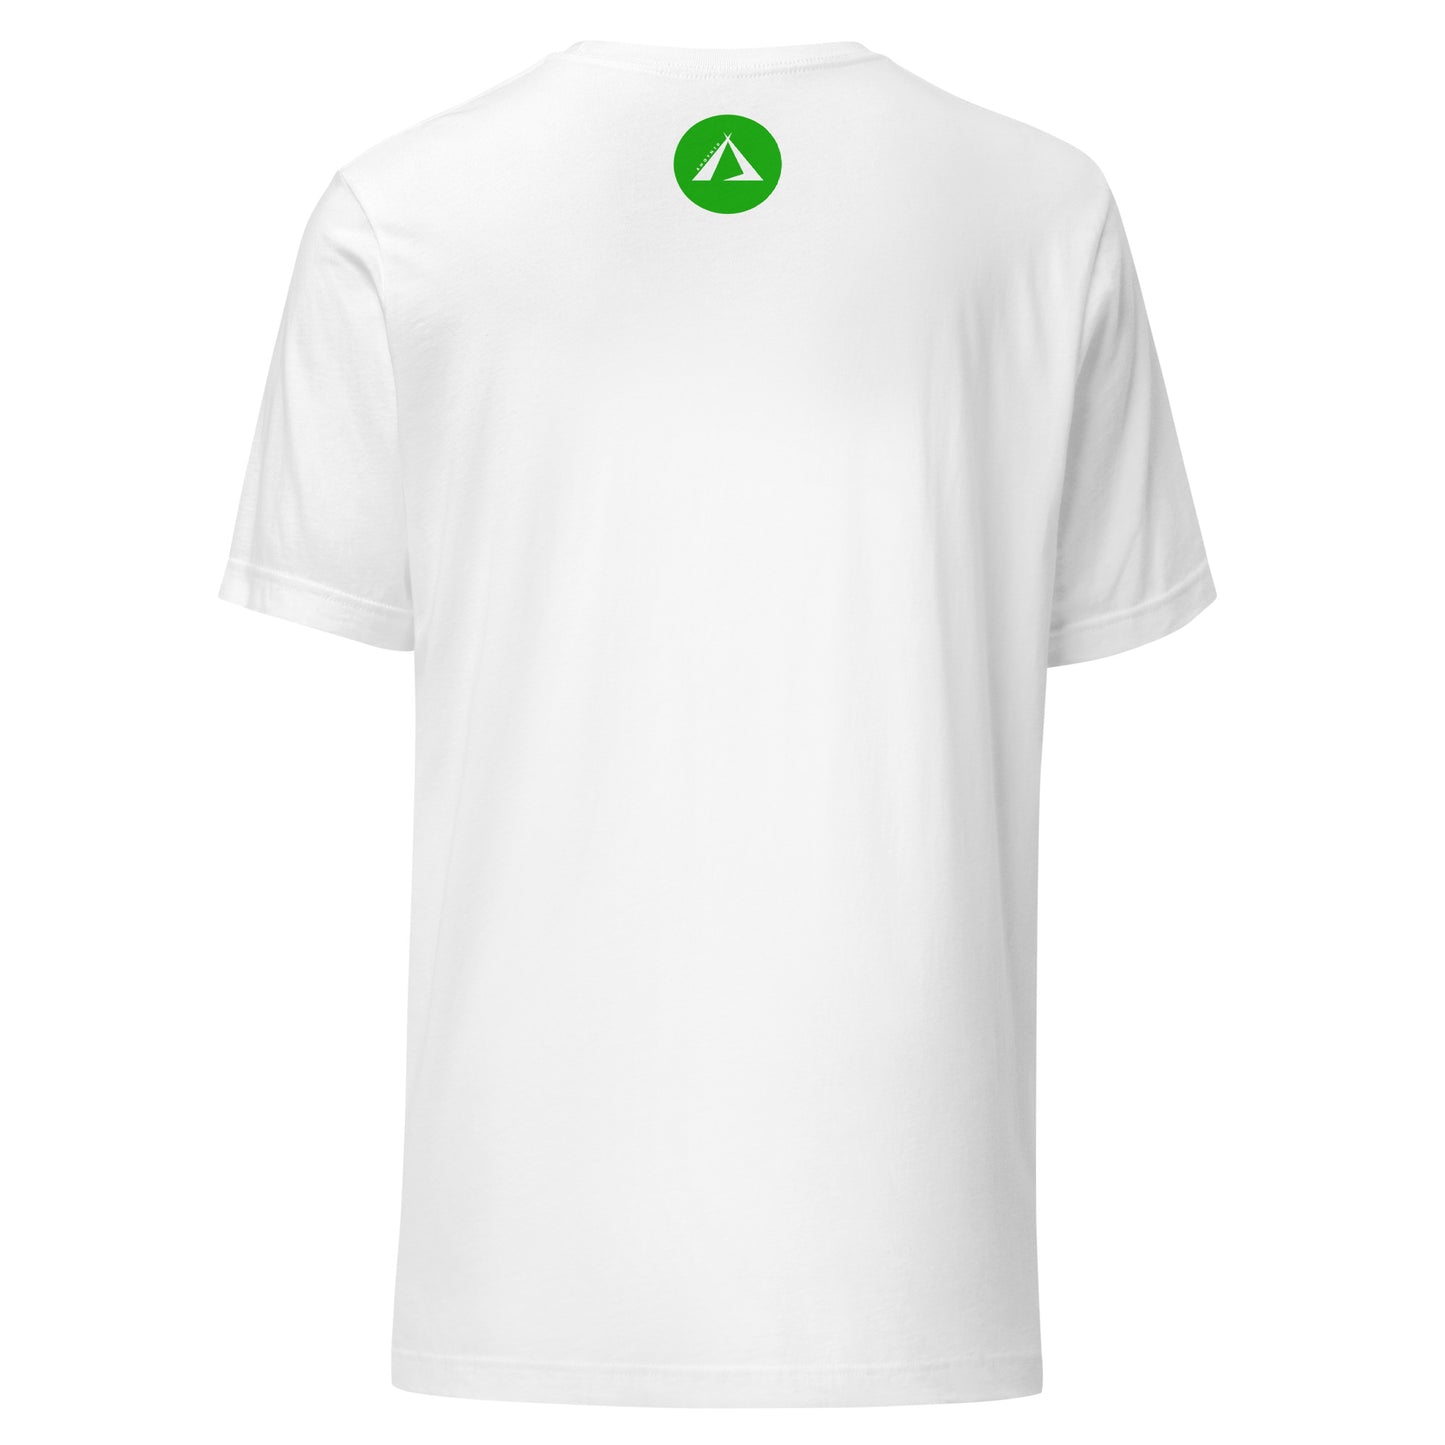 ANOYNTD LittleTeePee(Gr) Unisex t-shirt